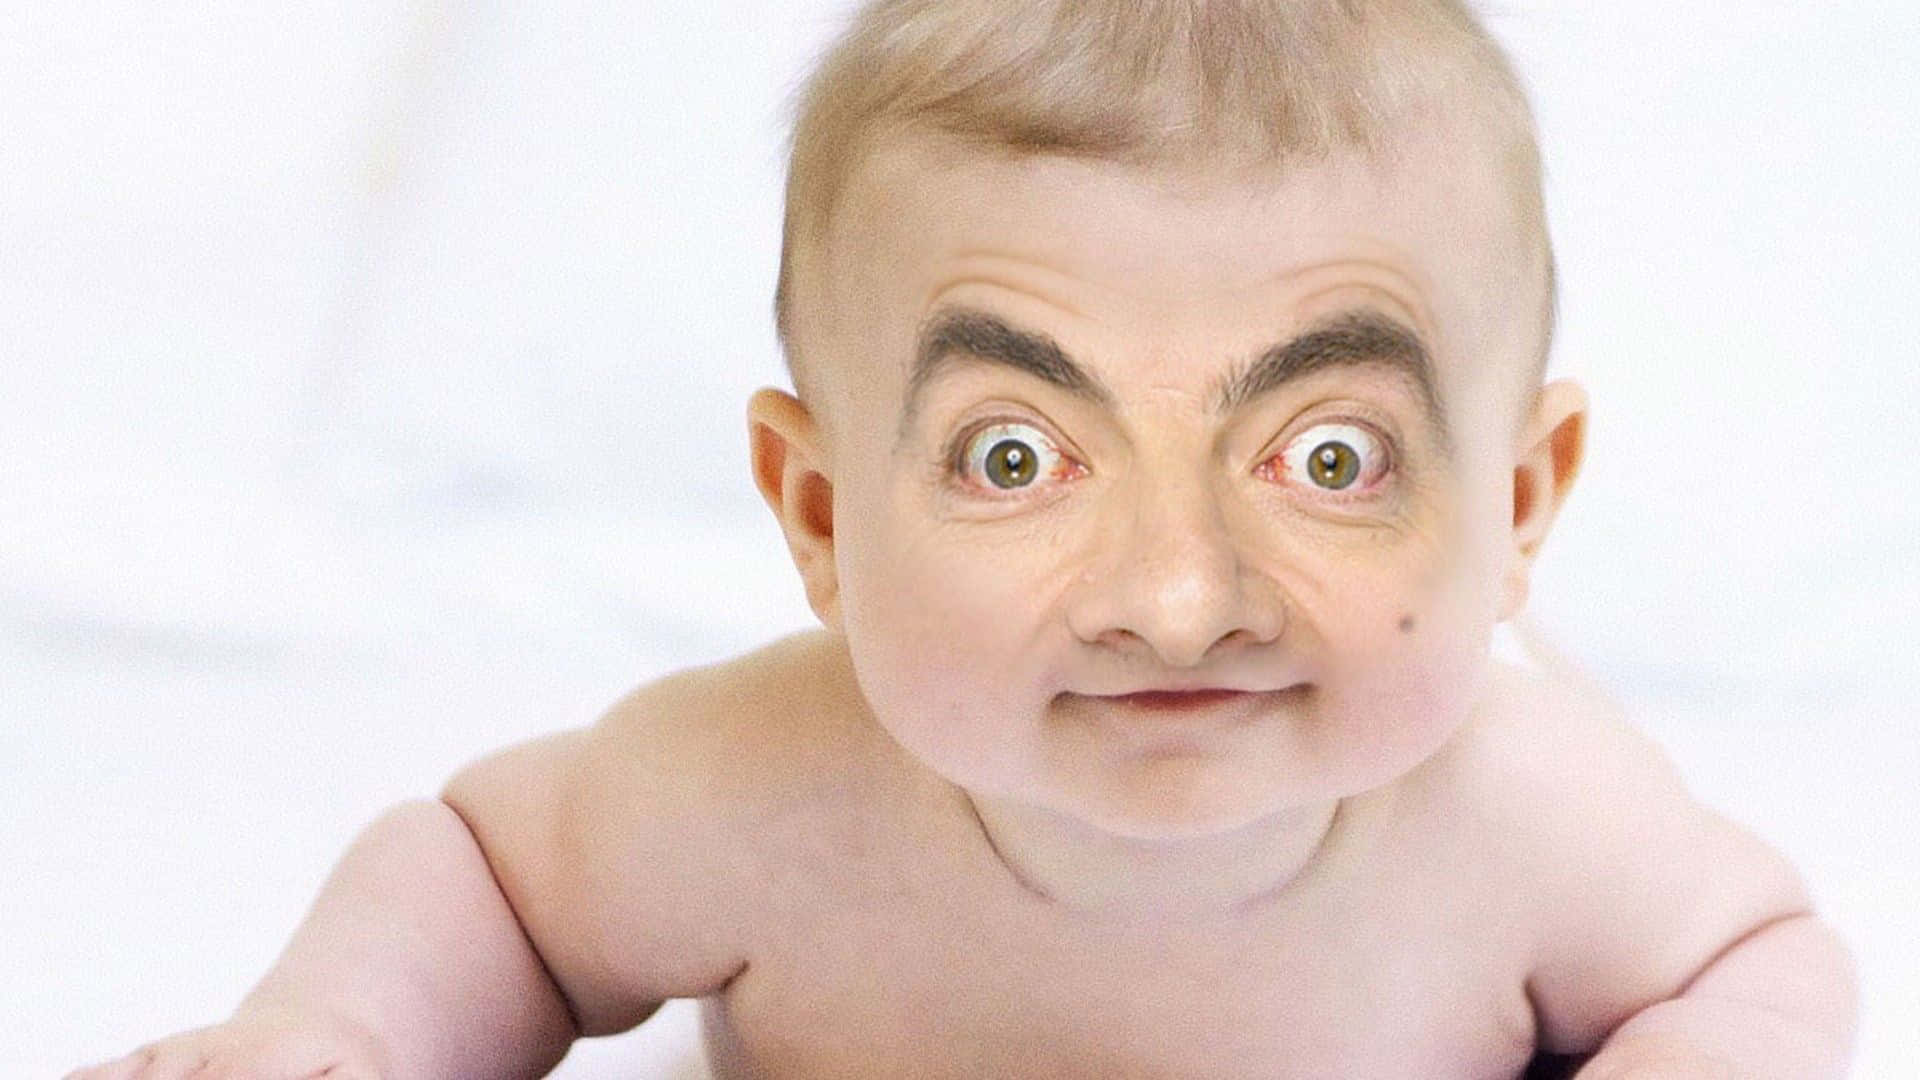 Extrañaedición De Mr. Bean En La Foto De La Cara De Un Bebé.